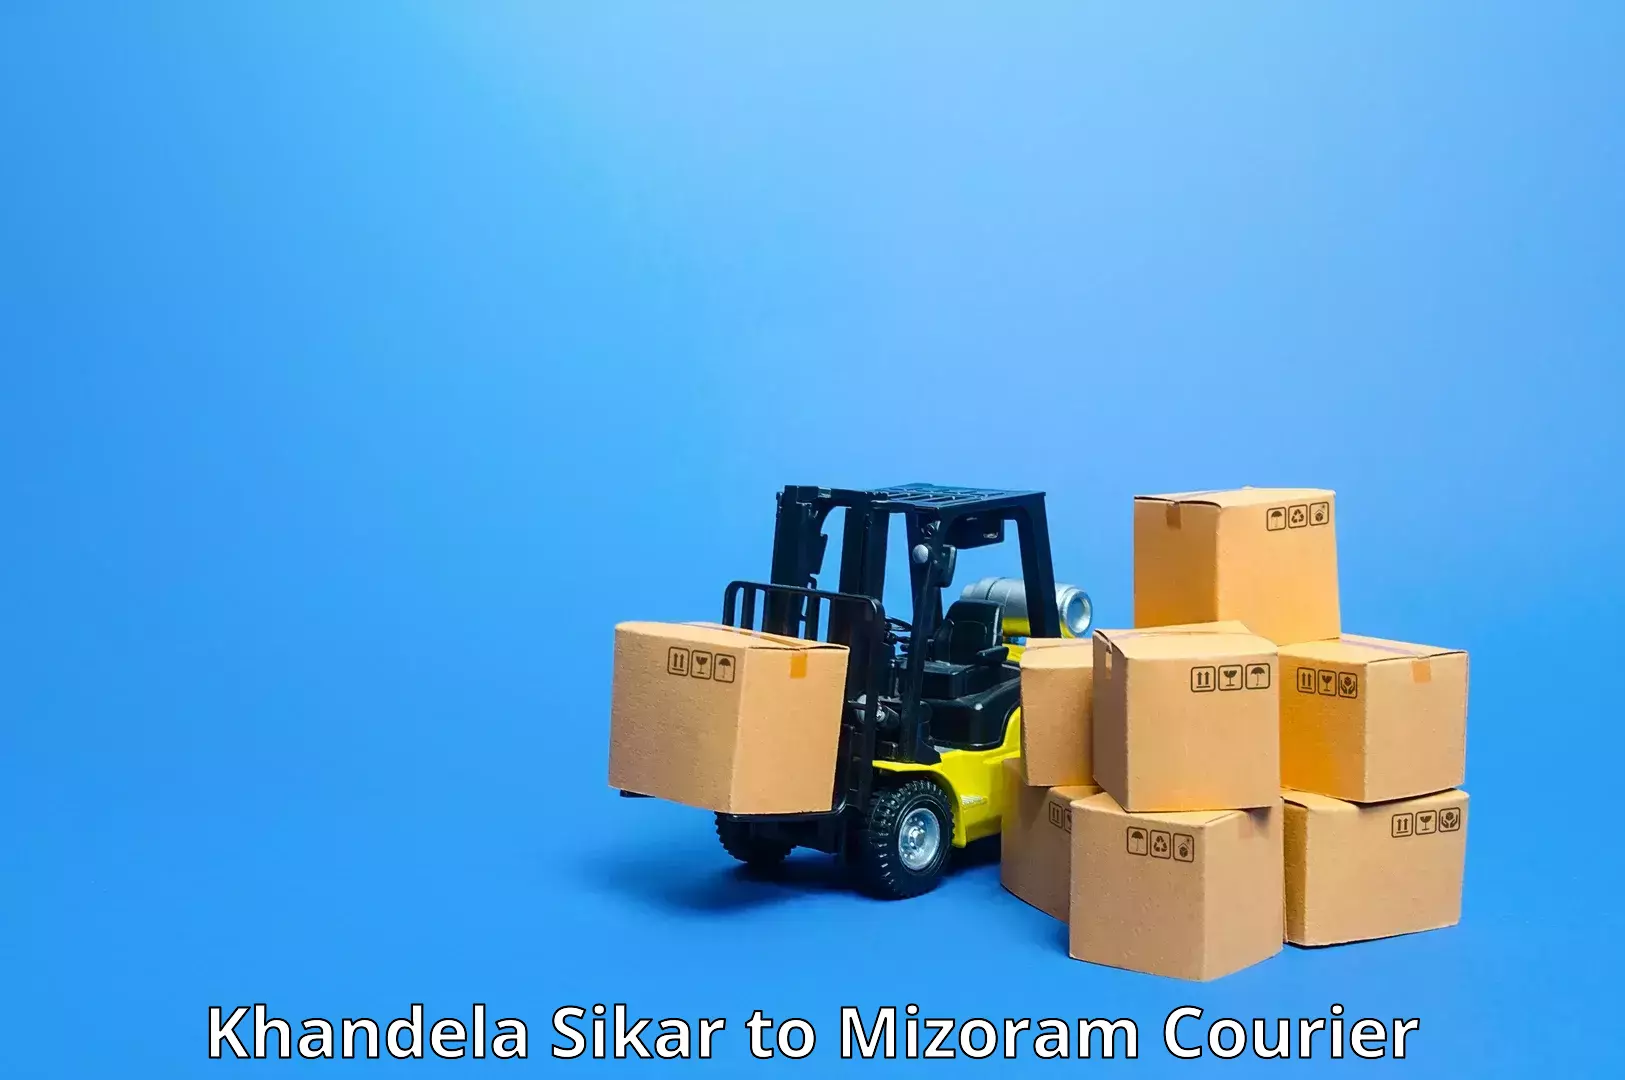 Cargo courier service Khandela Sikar to Saitual